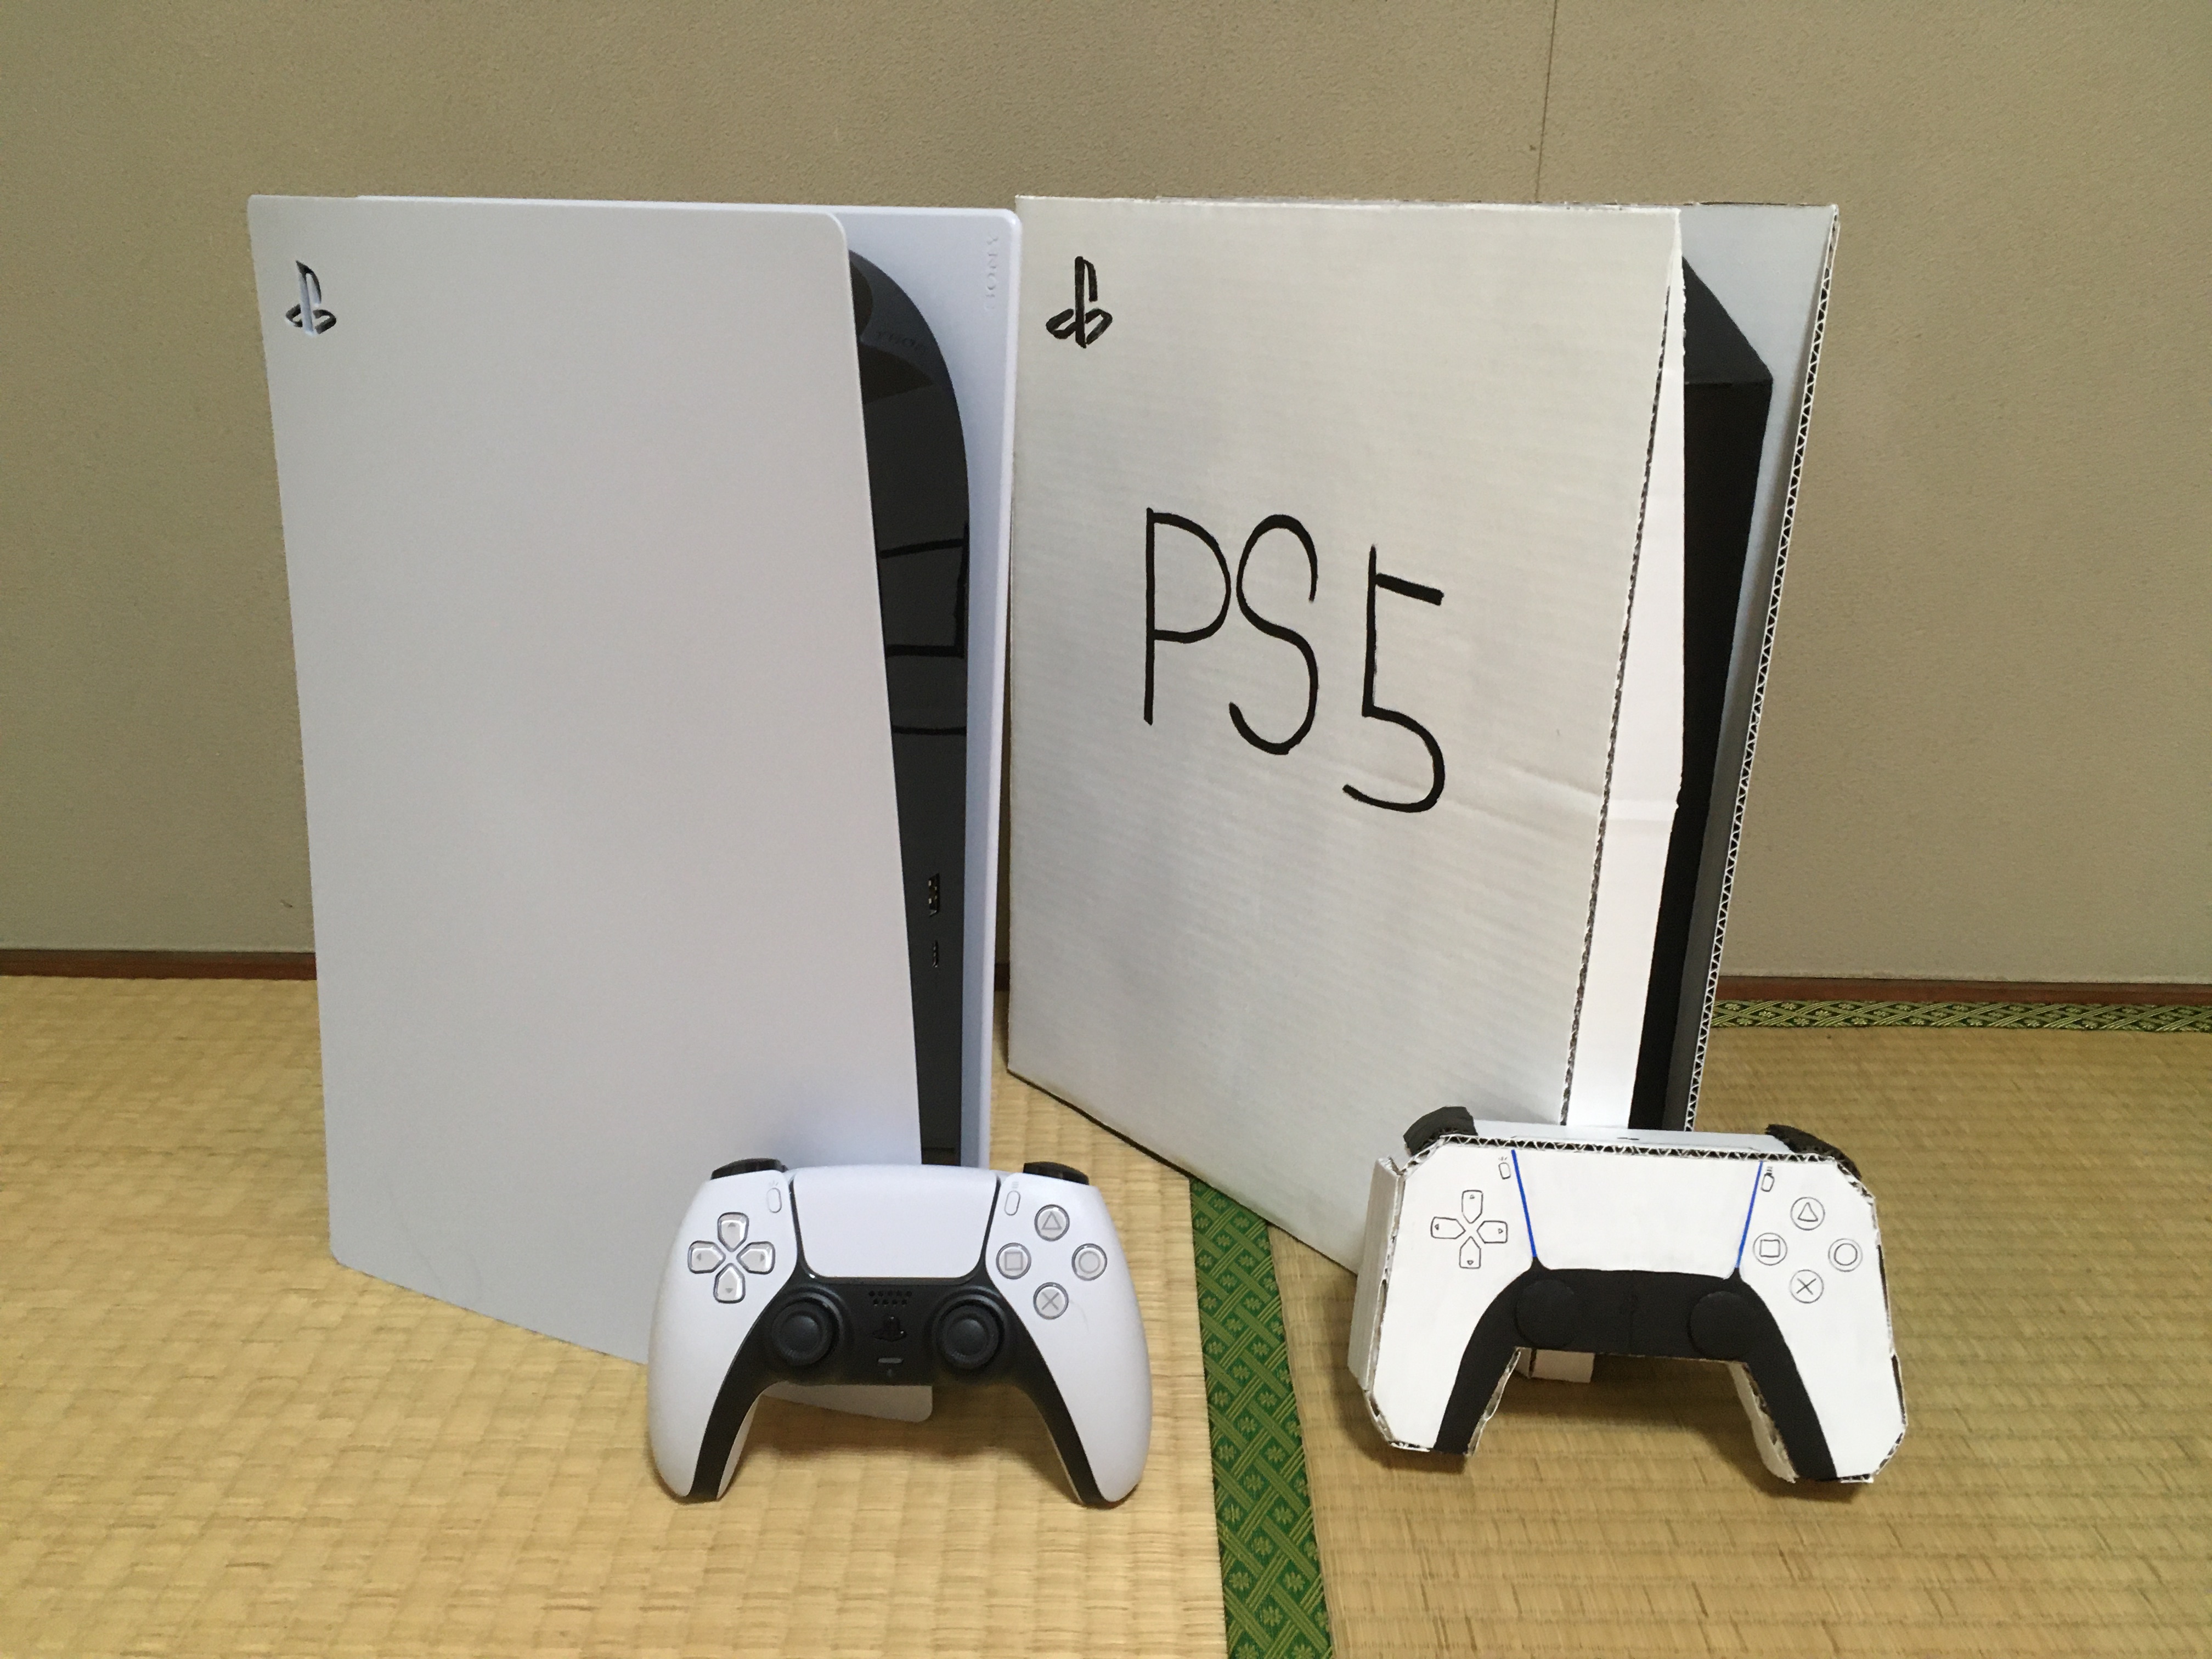 PS5가 너무 가지고싶었던 일본인